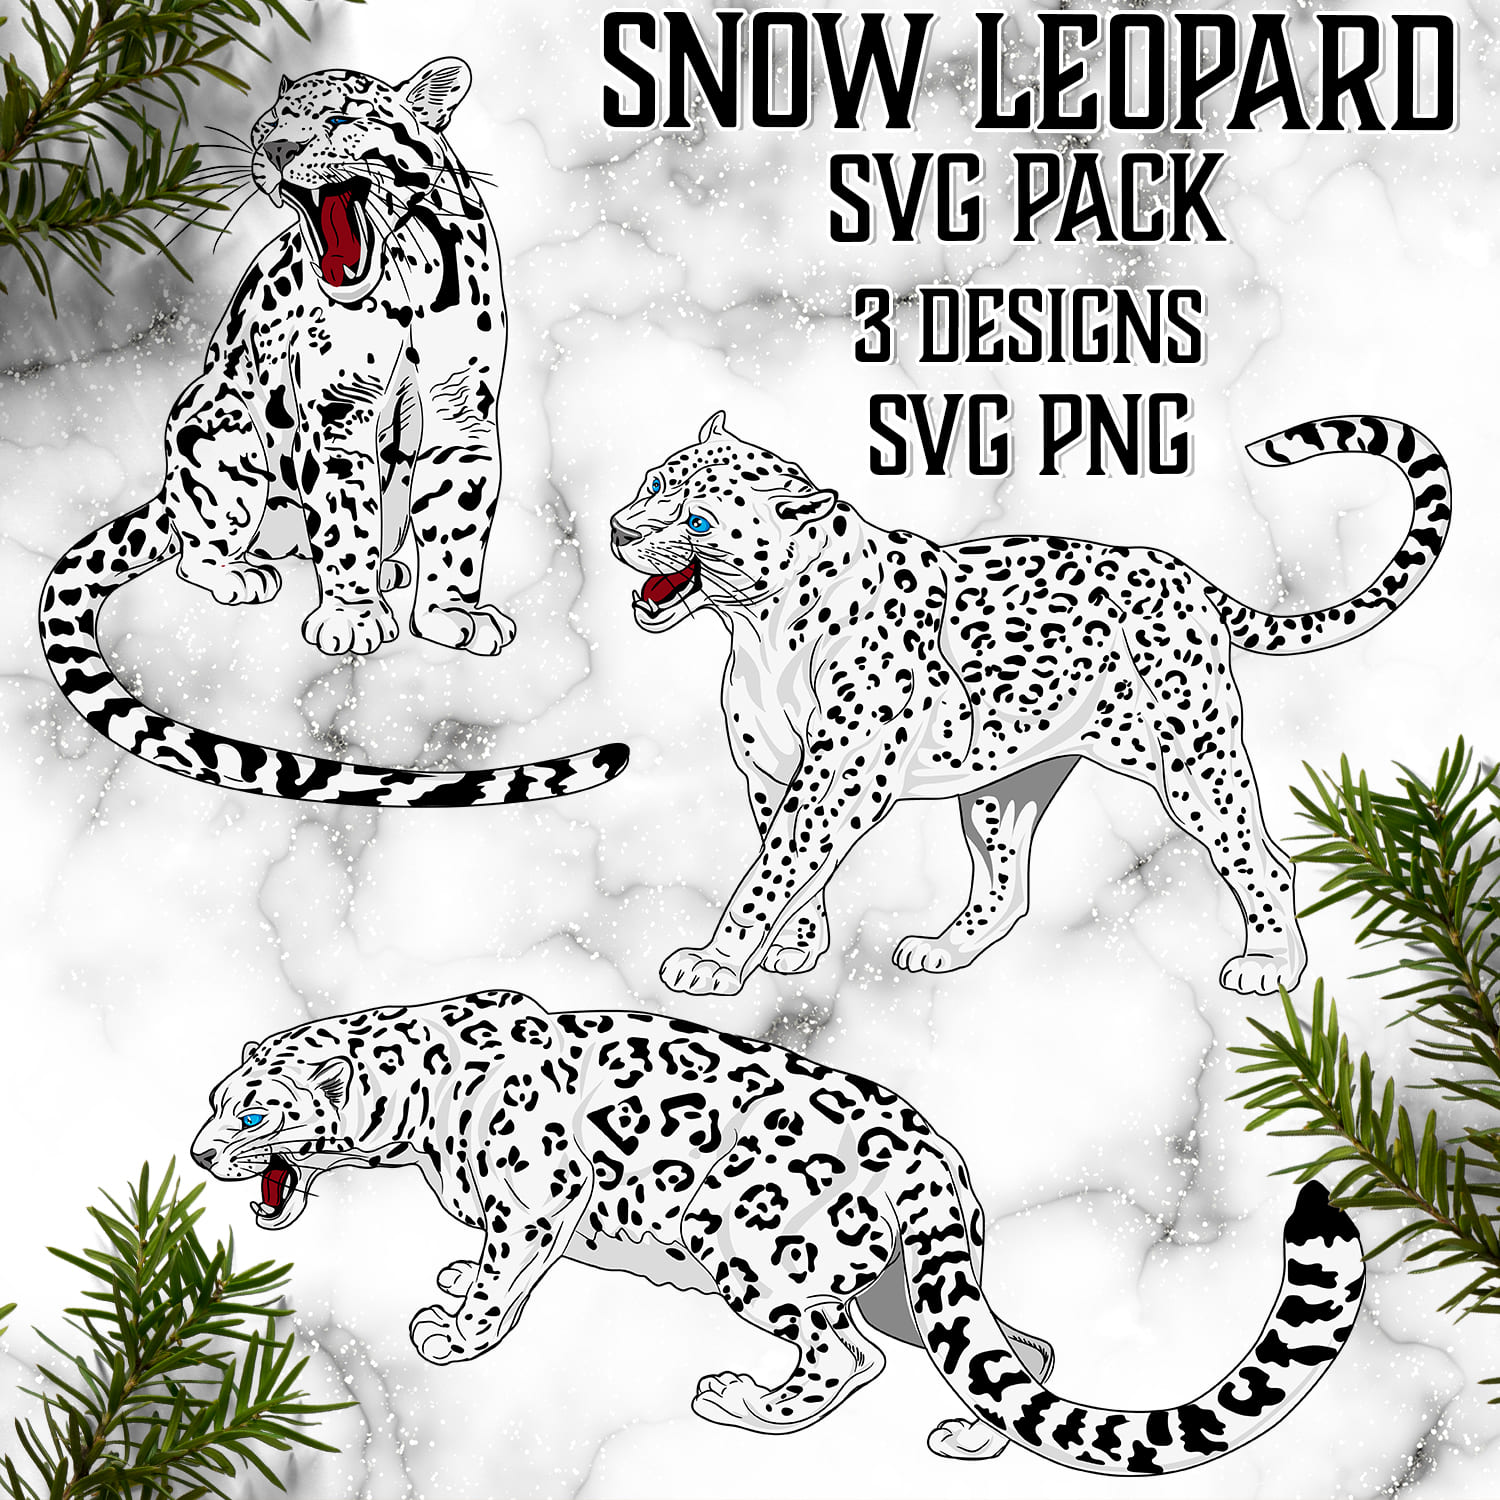 Snow leopard svg pack 3 designs svg png.